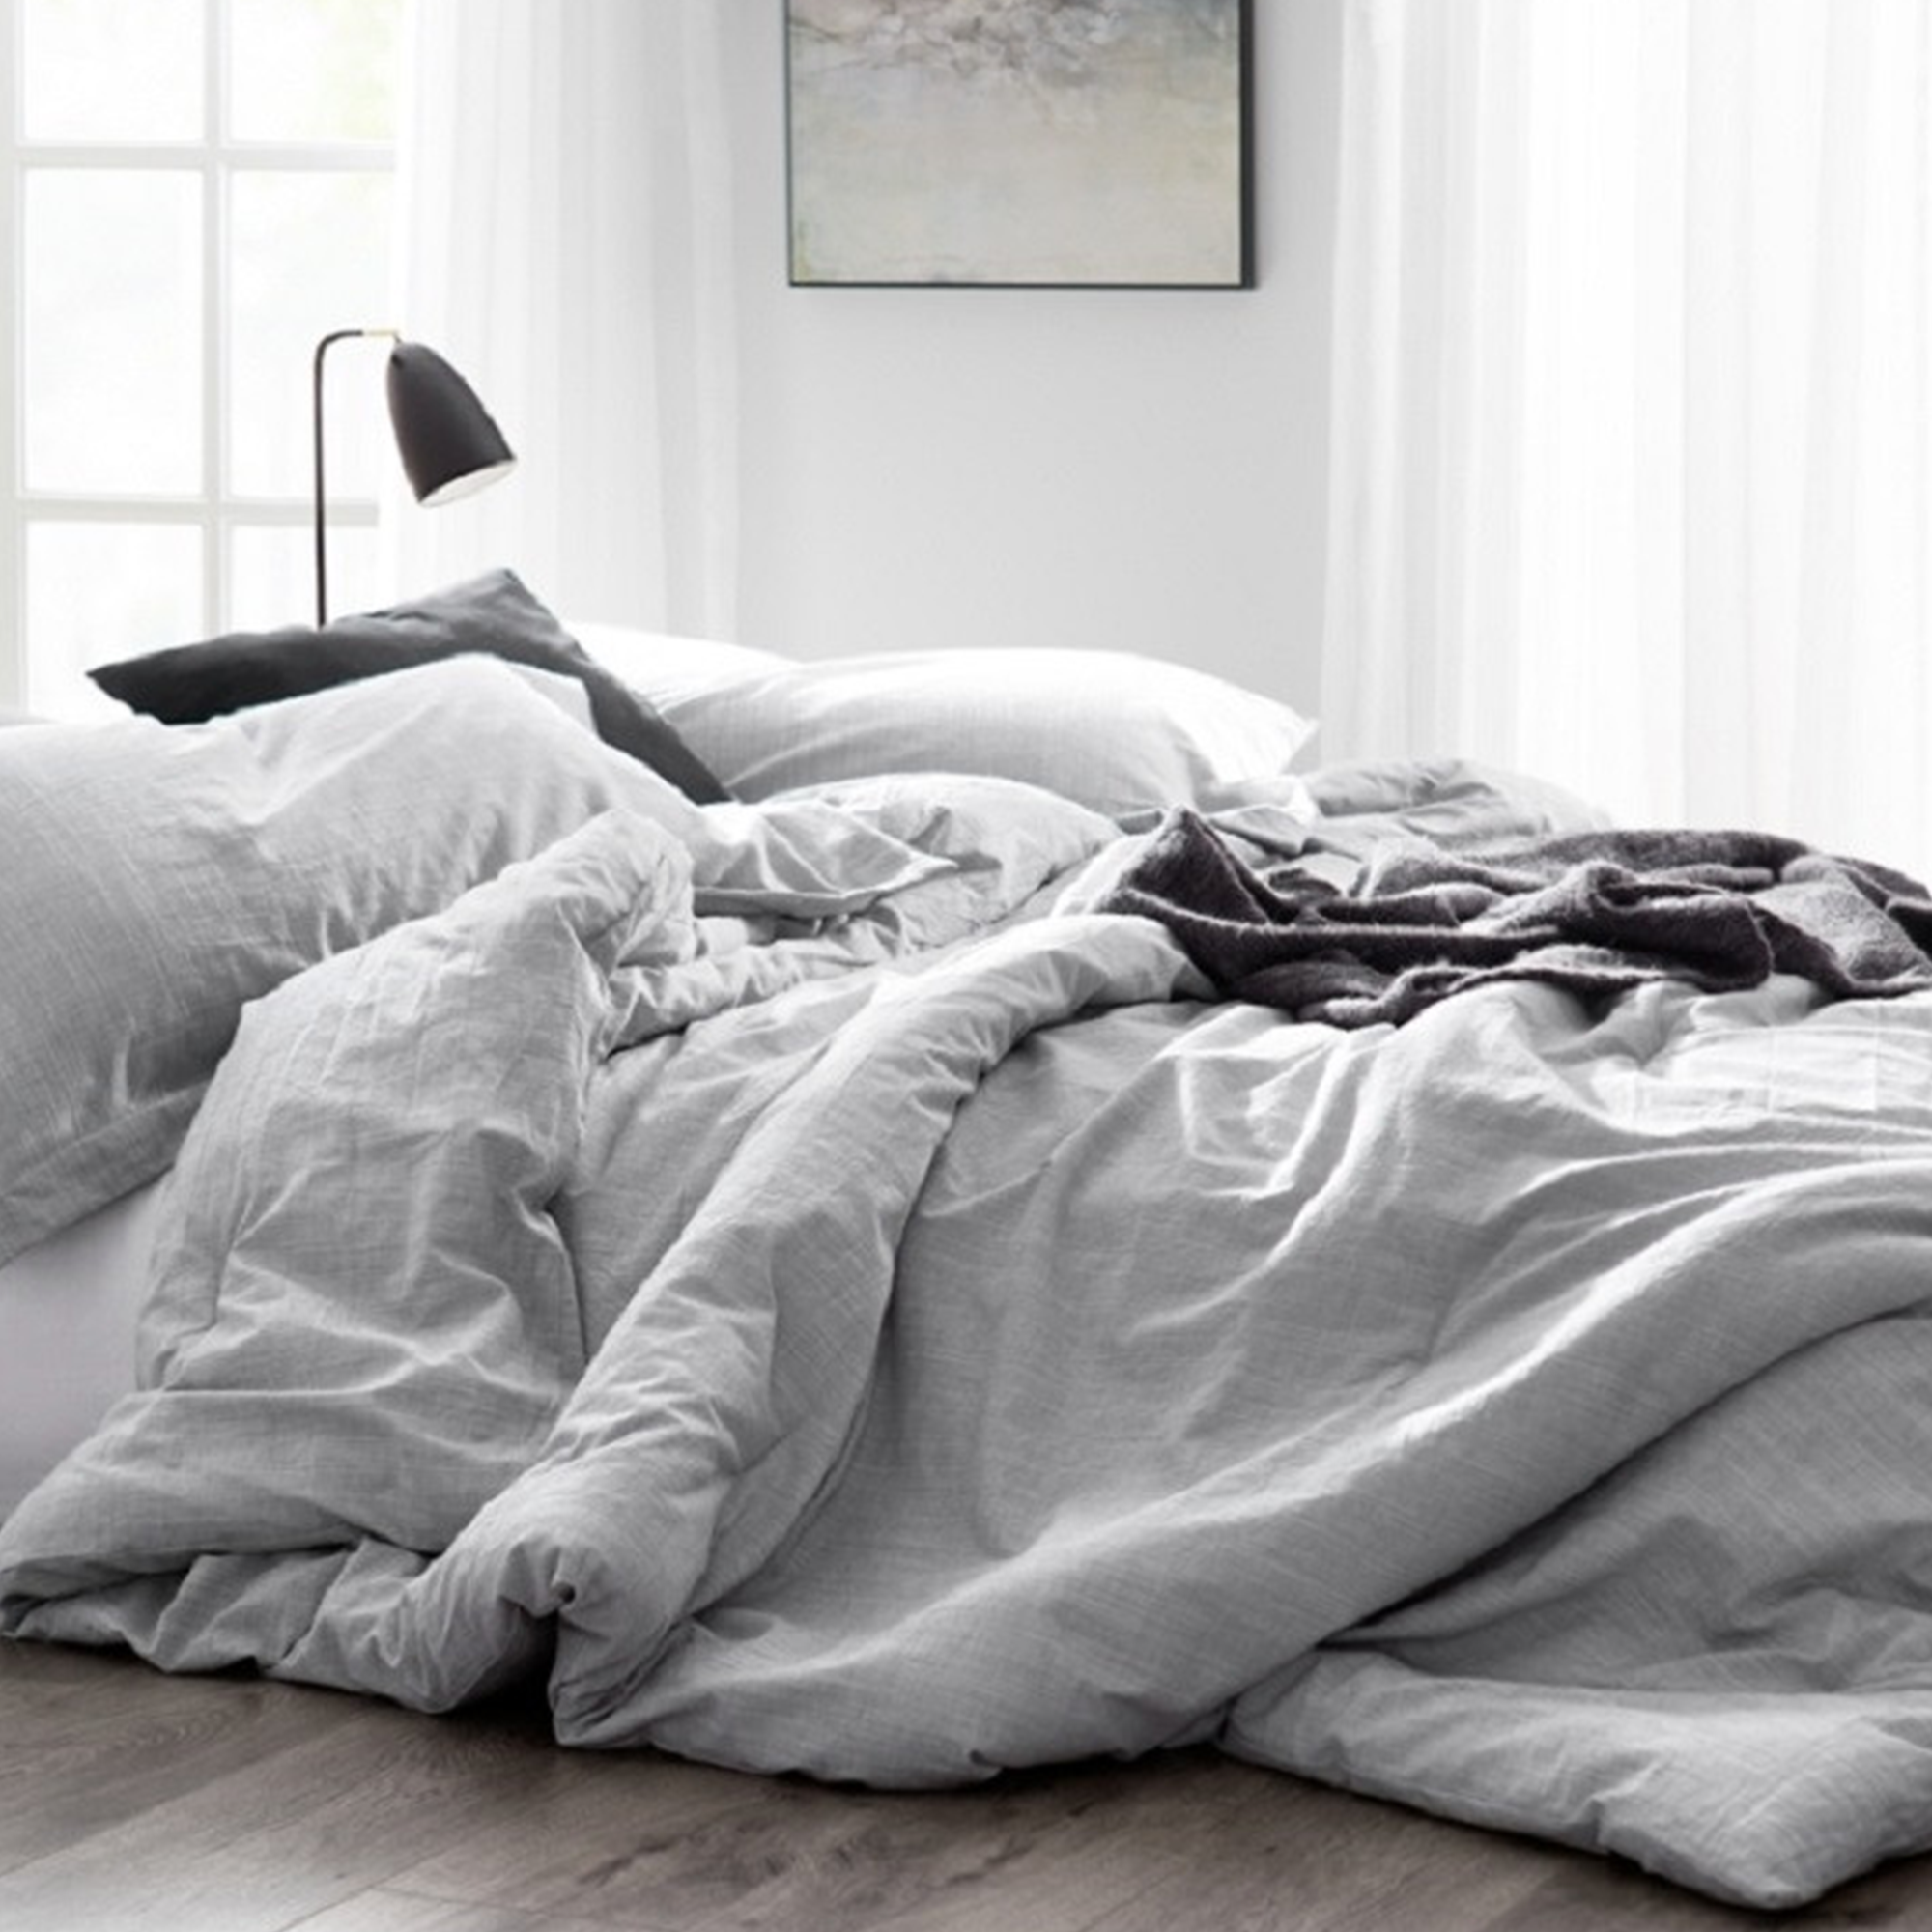 Одеяло на кровати. Одеяло и подушка. Красивое одеяло. Одеяло серое. Постель постелька